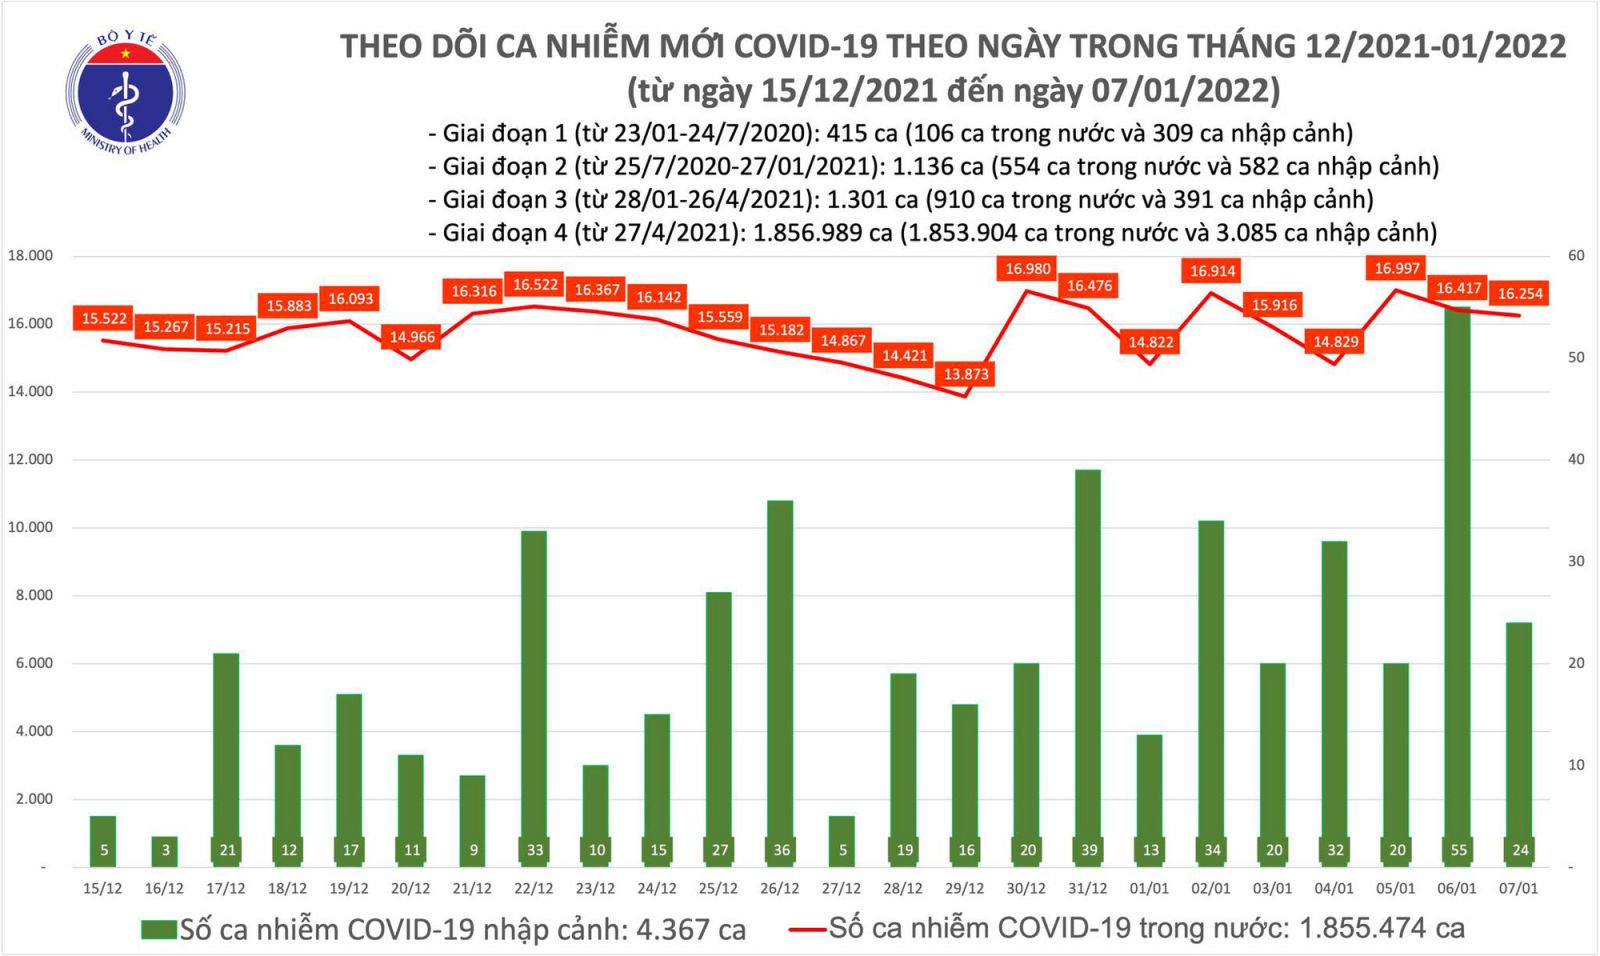 Ngày 7/1: Có 16.278 ca mắc COVID-19 tại 59 tỉnh, thành; Hà Nội tiếp tục nhiều nhất với 2.723 ca